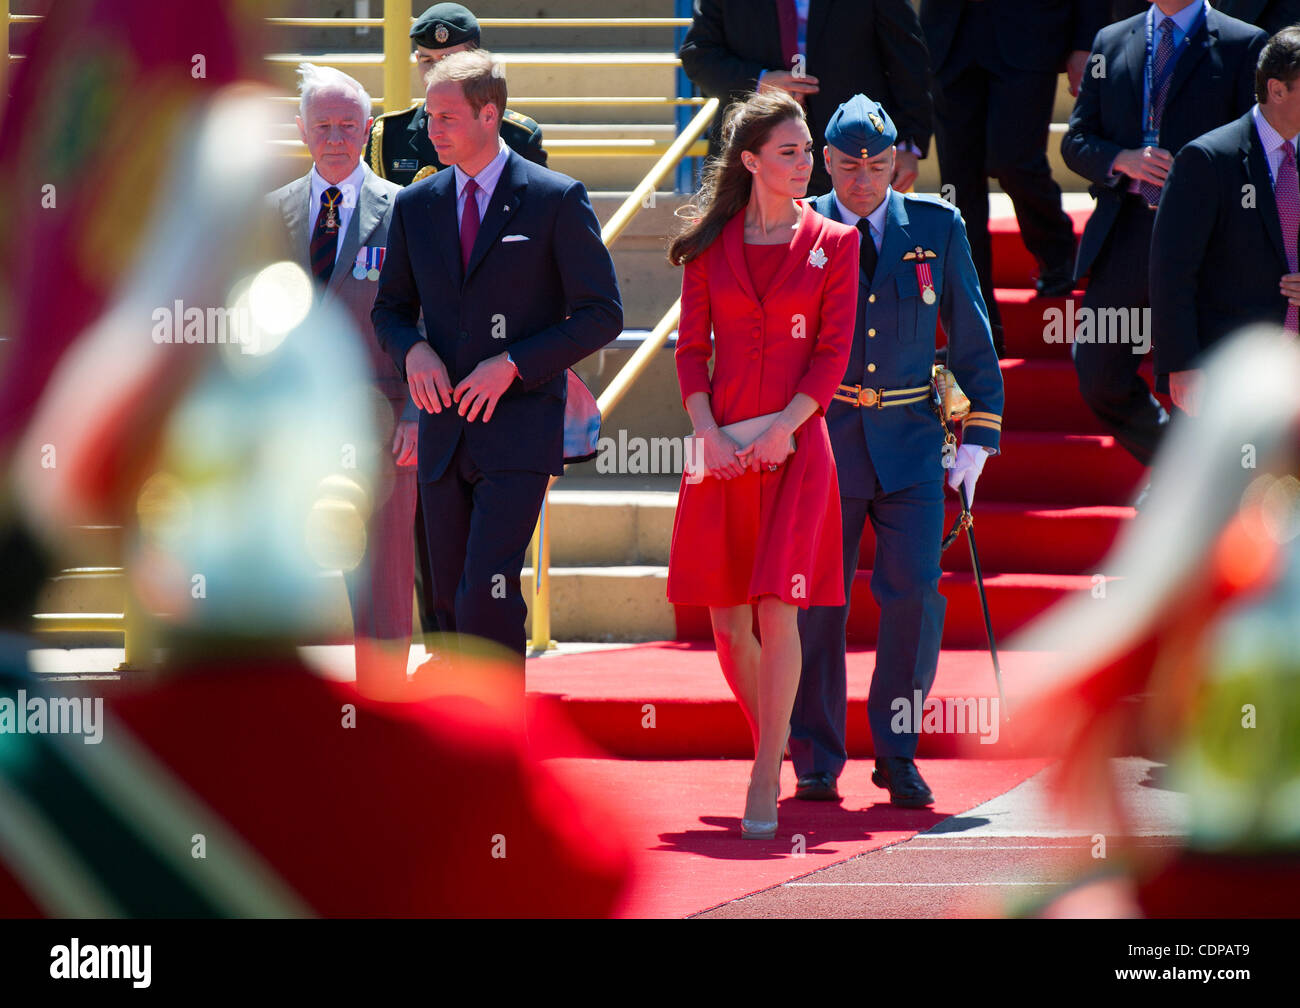 8 luglio 2011 - Calgary, Alberta, Canada - Il principe William e Catherine Middleton, duchessa di Cambridge, assistere ad una cerimonia alla mietitrebbia rotativa Challenger Park. Calgary è l'ultima fermata canadese della British Royal Tour. Foto di Jimmy Jeong / collettivo non autorizzati Foto Stock